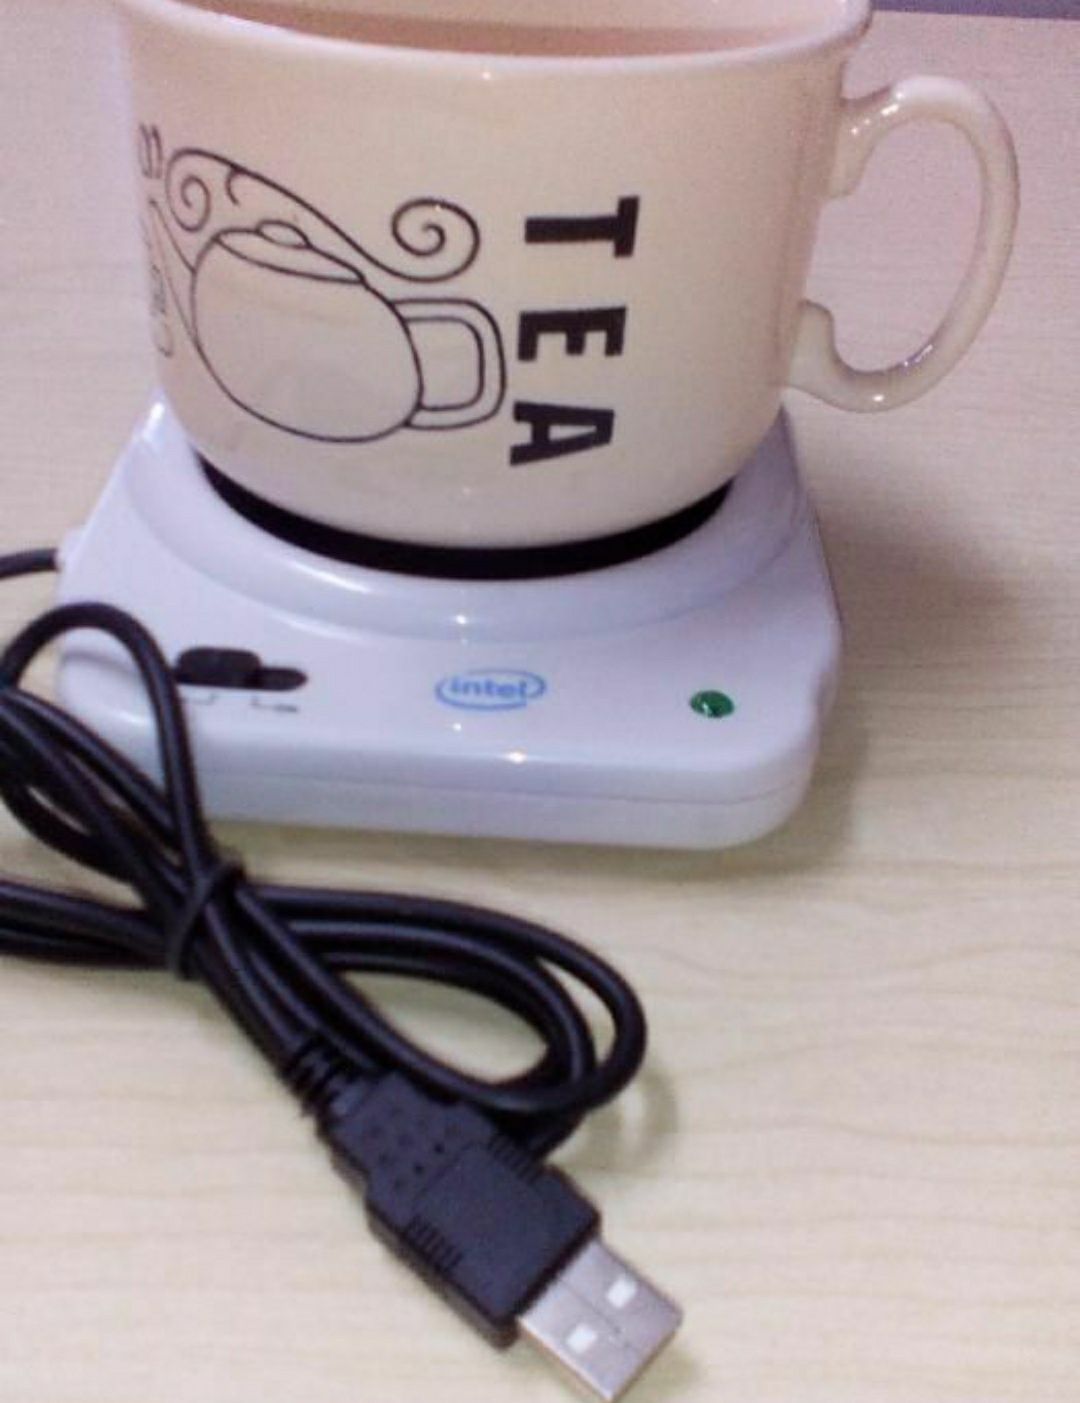 Placa USB para aquecer a chávena.